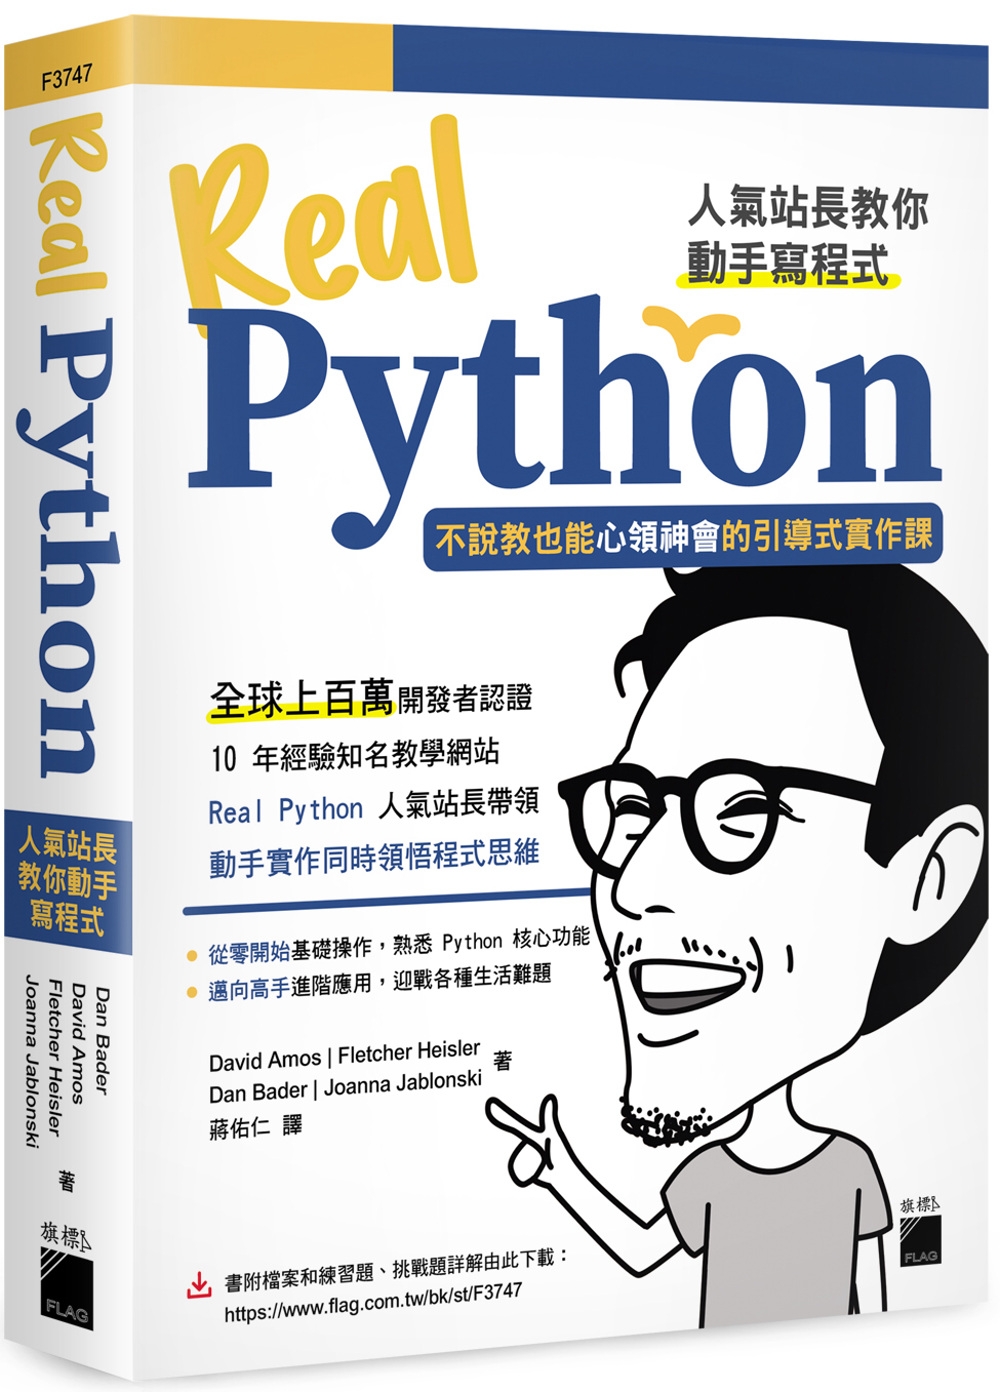 Real Python 人氣站長教你動手寫程式 - 不說教也...